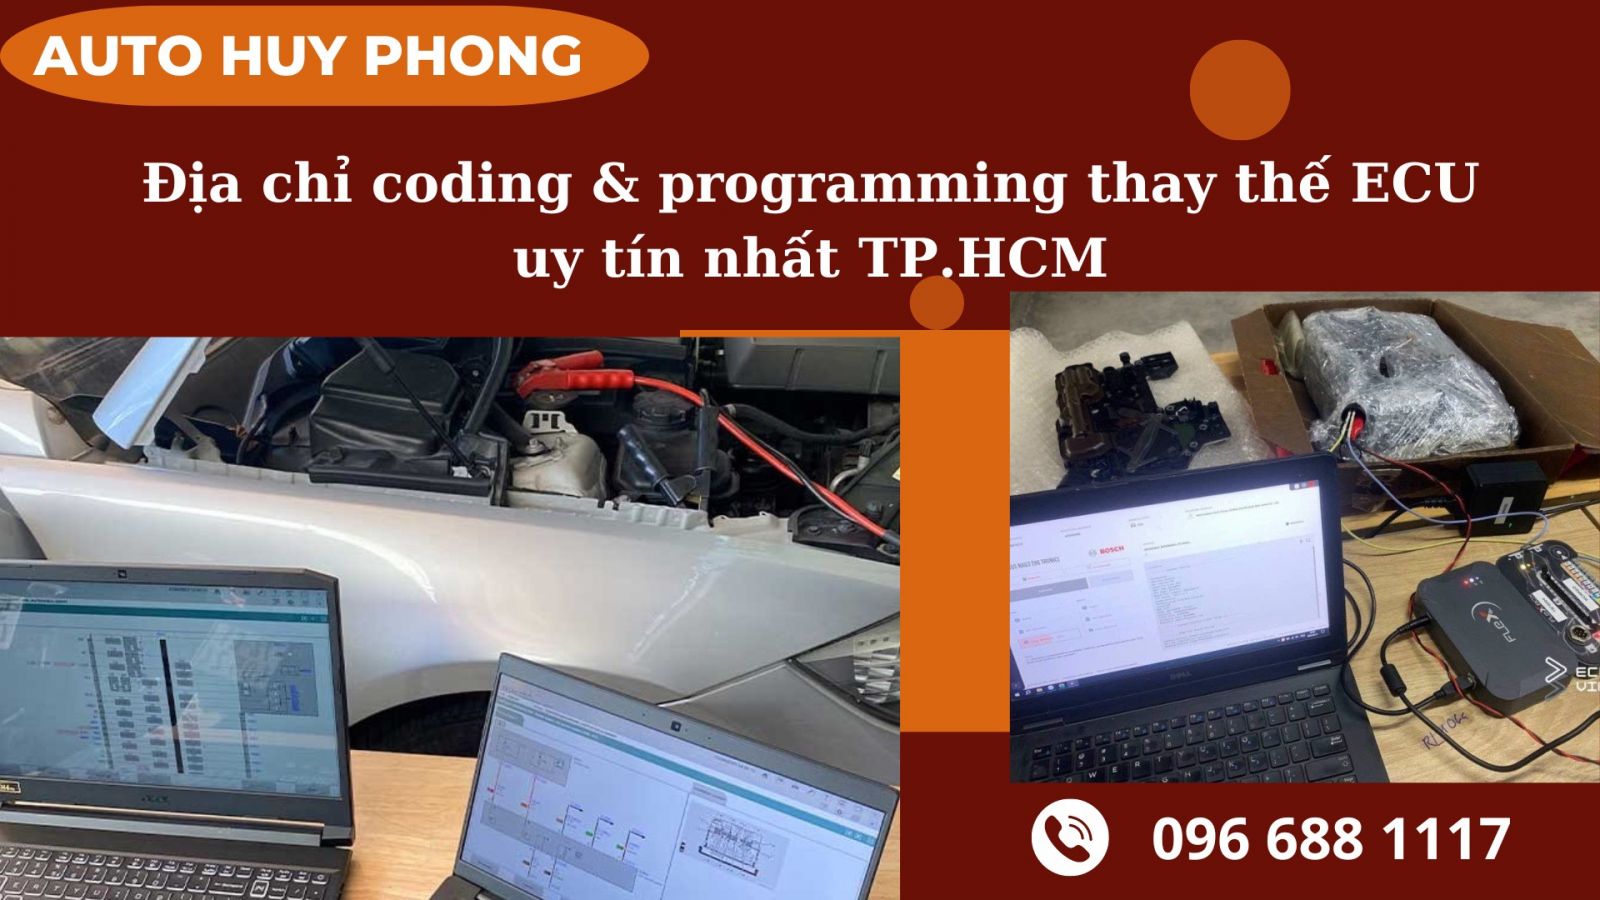 Hình 5: Auto Huy Phong – địa chỉ coding & programming thay thế ECU uy tín nhất TP.HCM